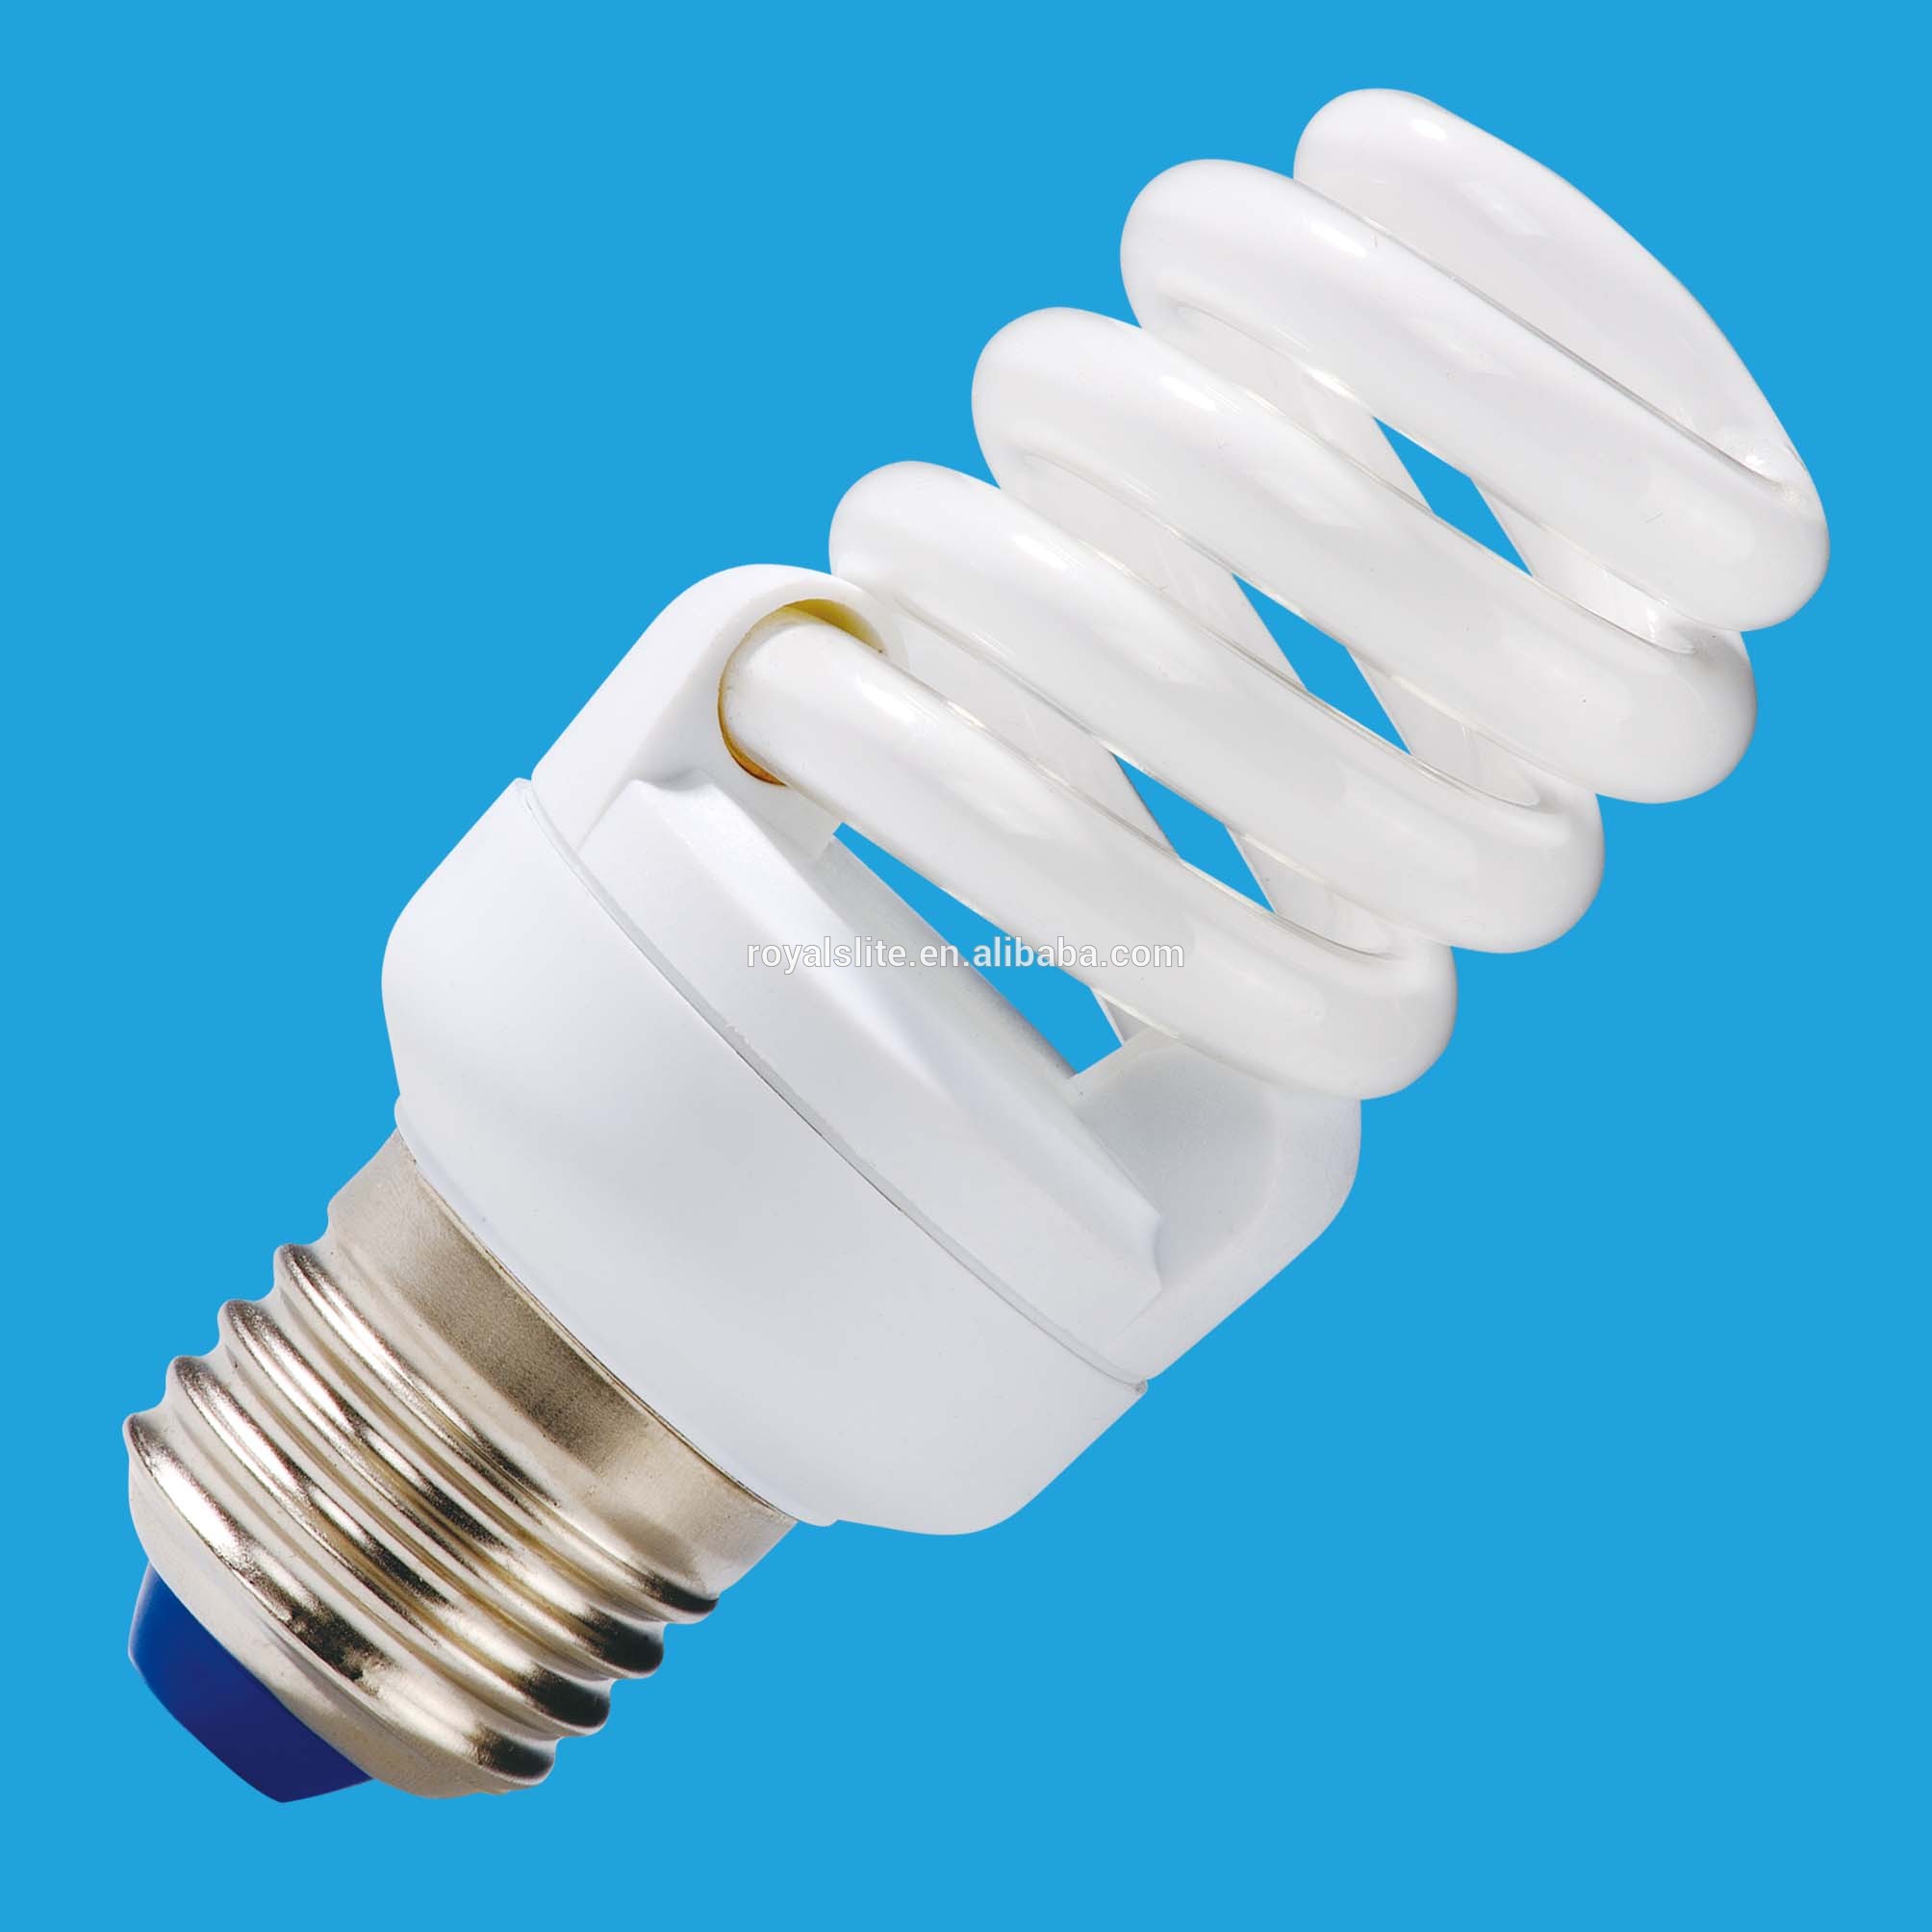 UL Energy star certified commercial lighting power saving LED par38 15w led bulb